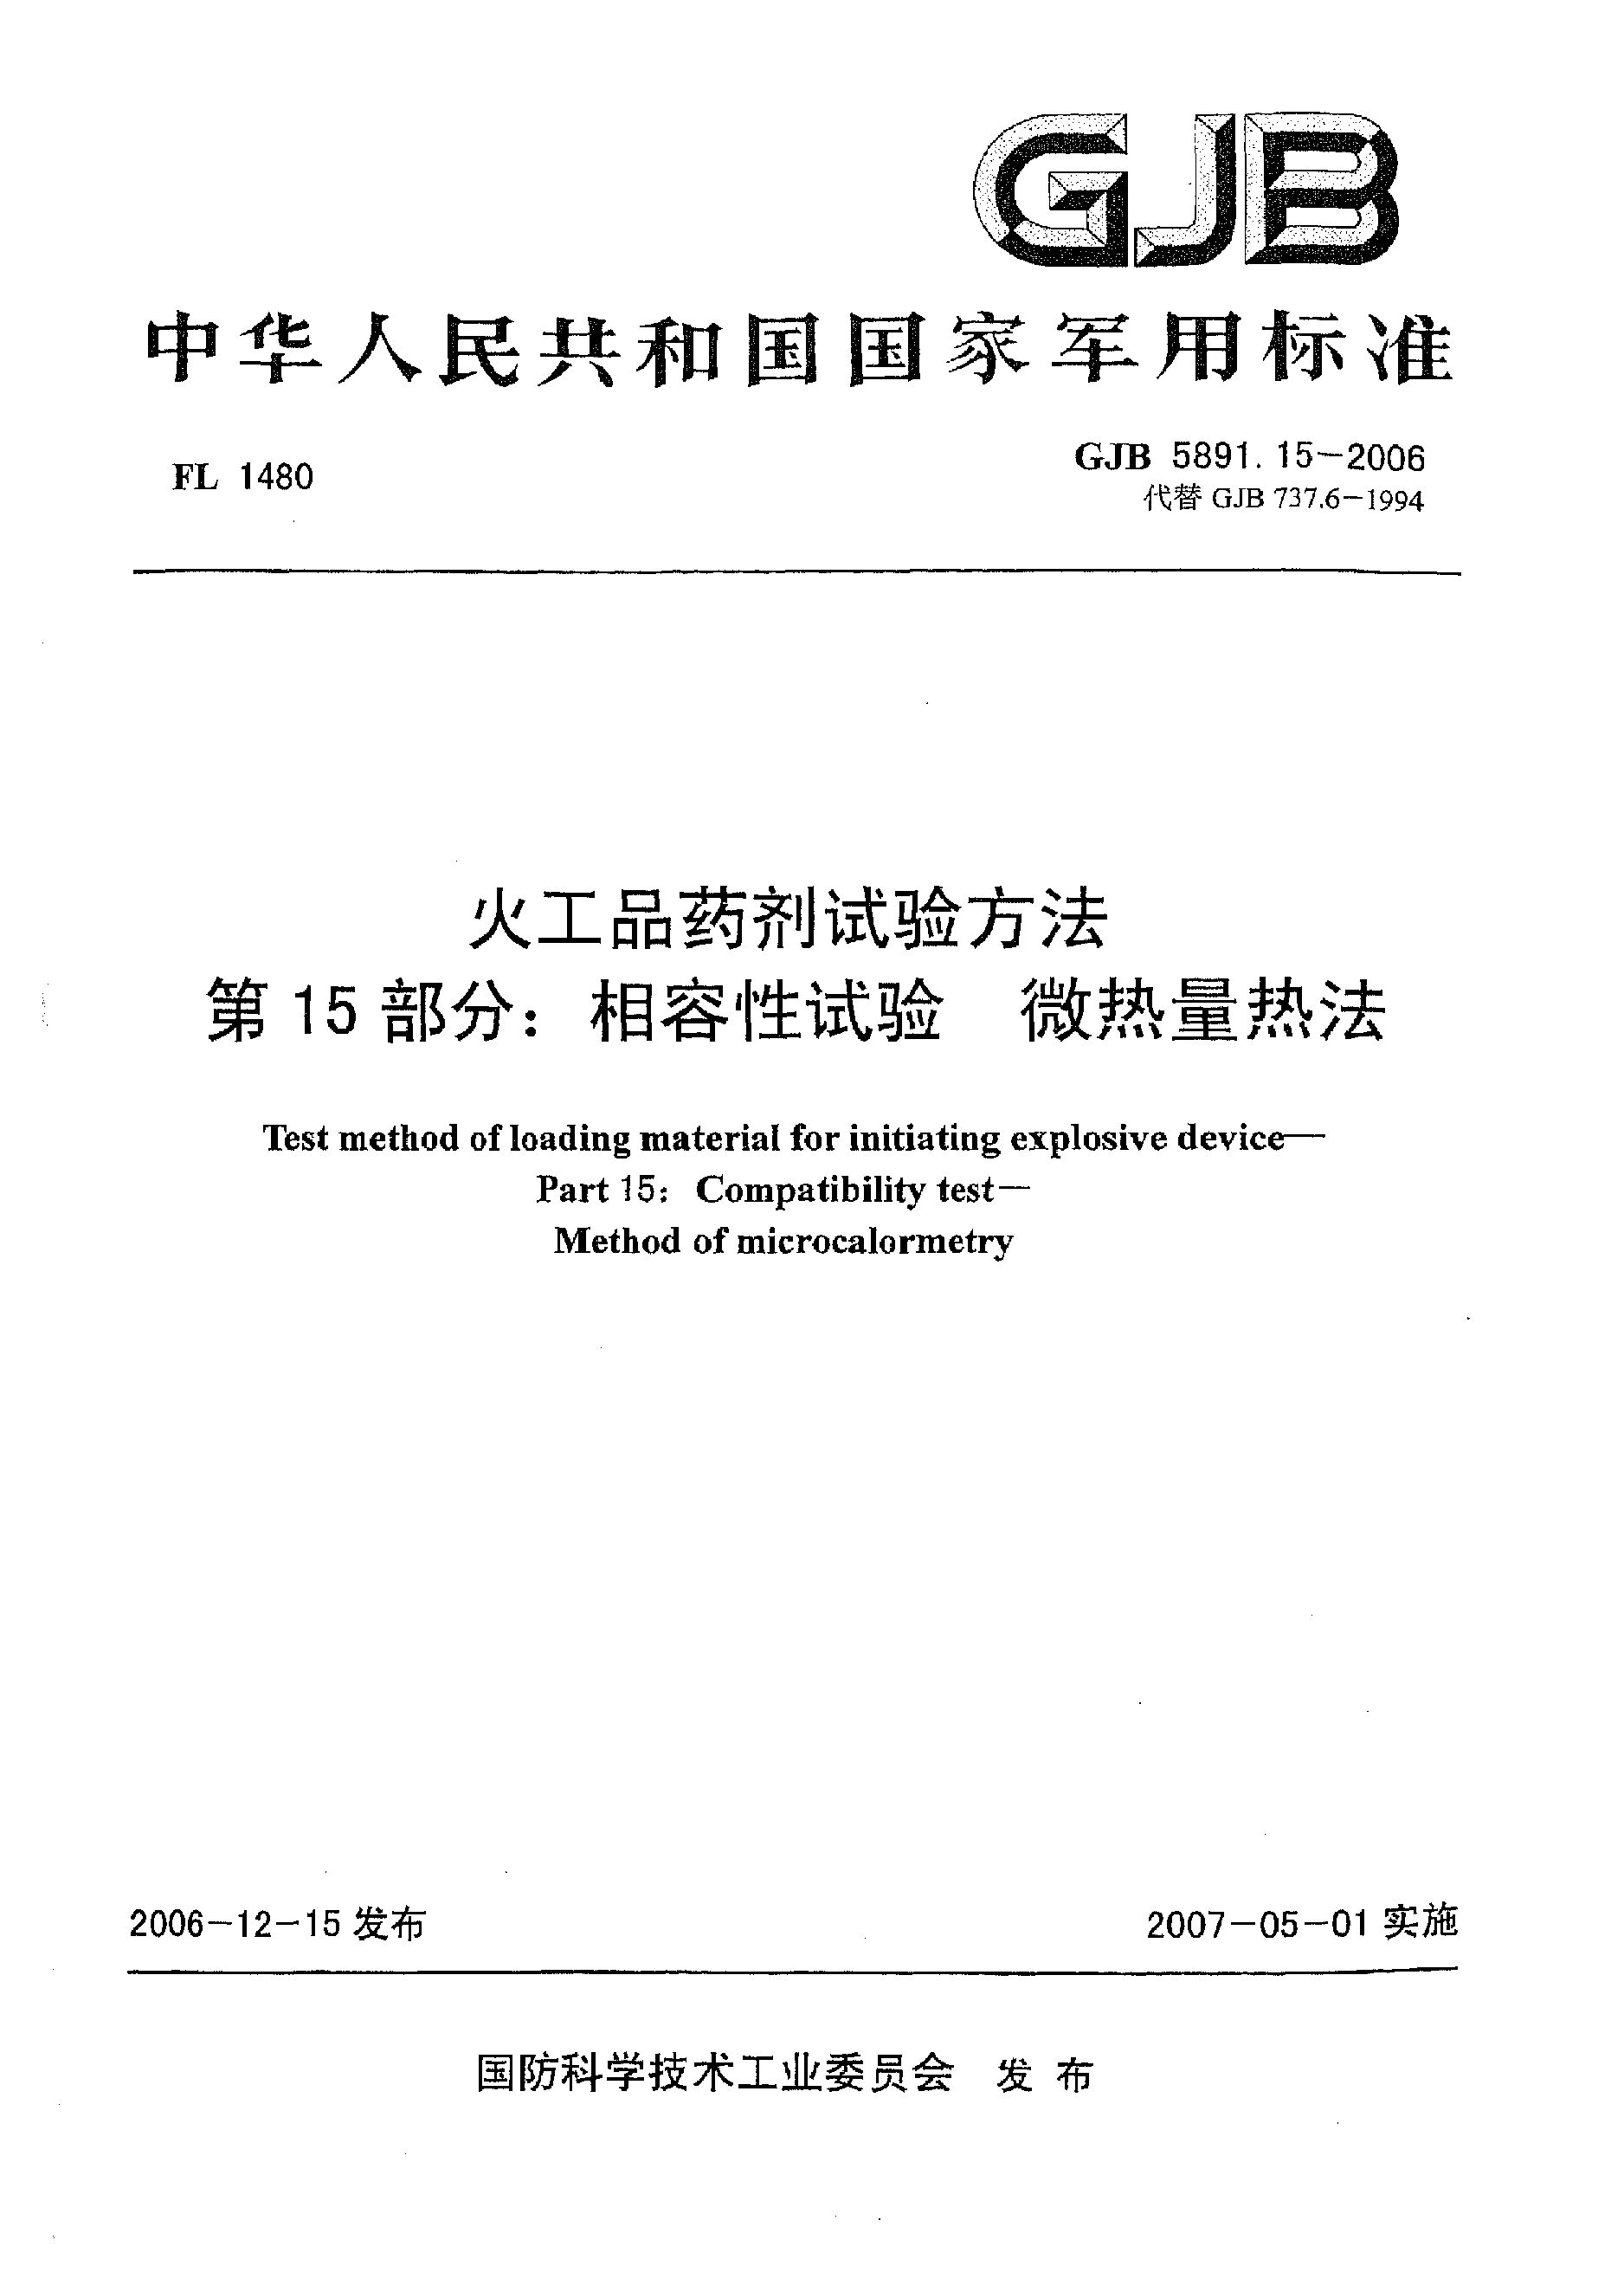 GJB 5891.15-2006封面图